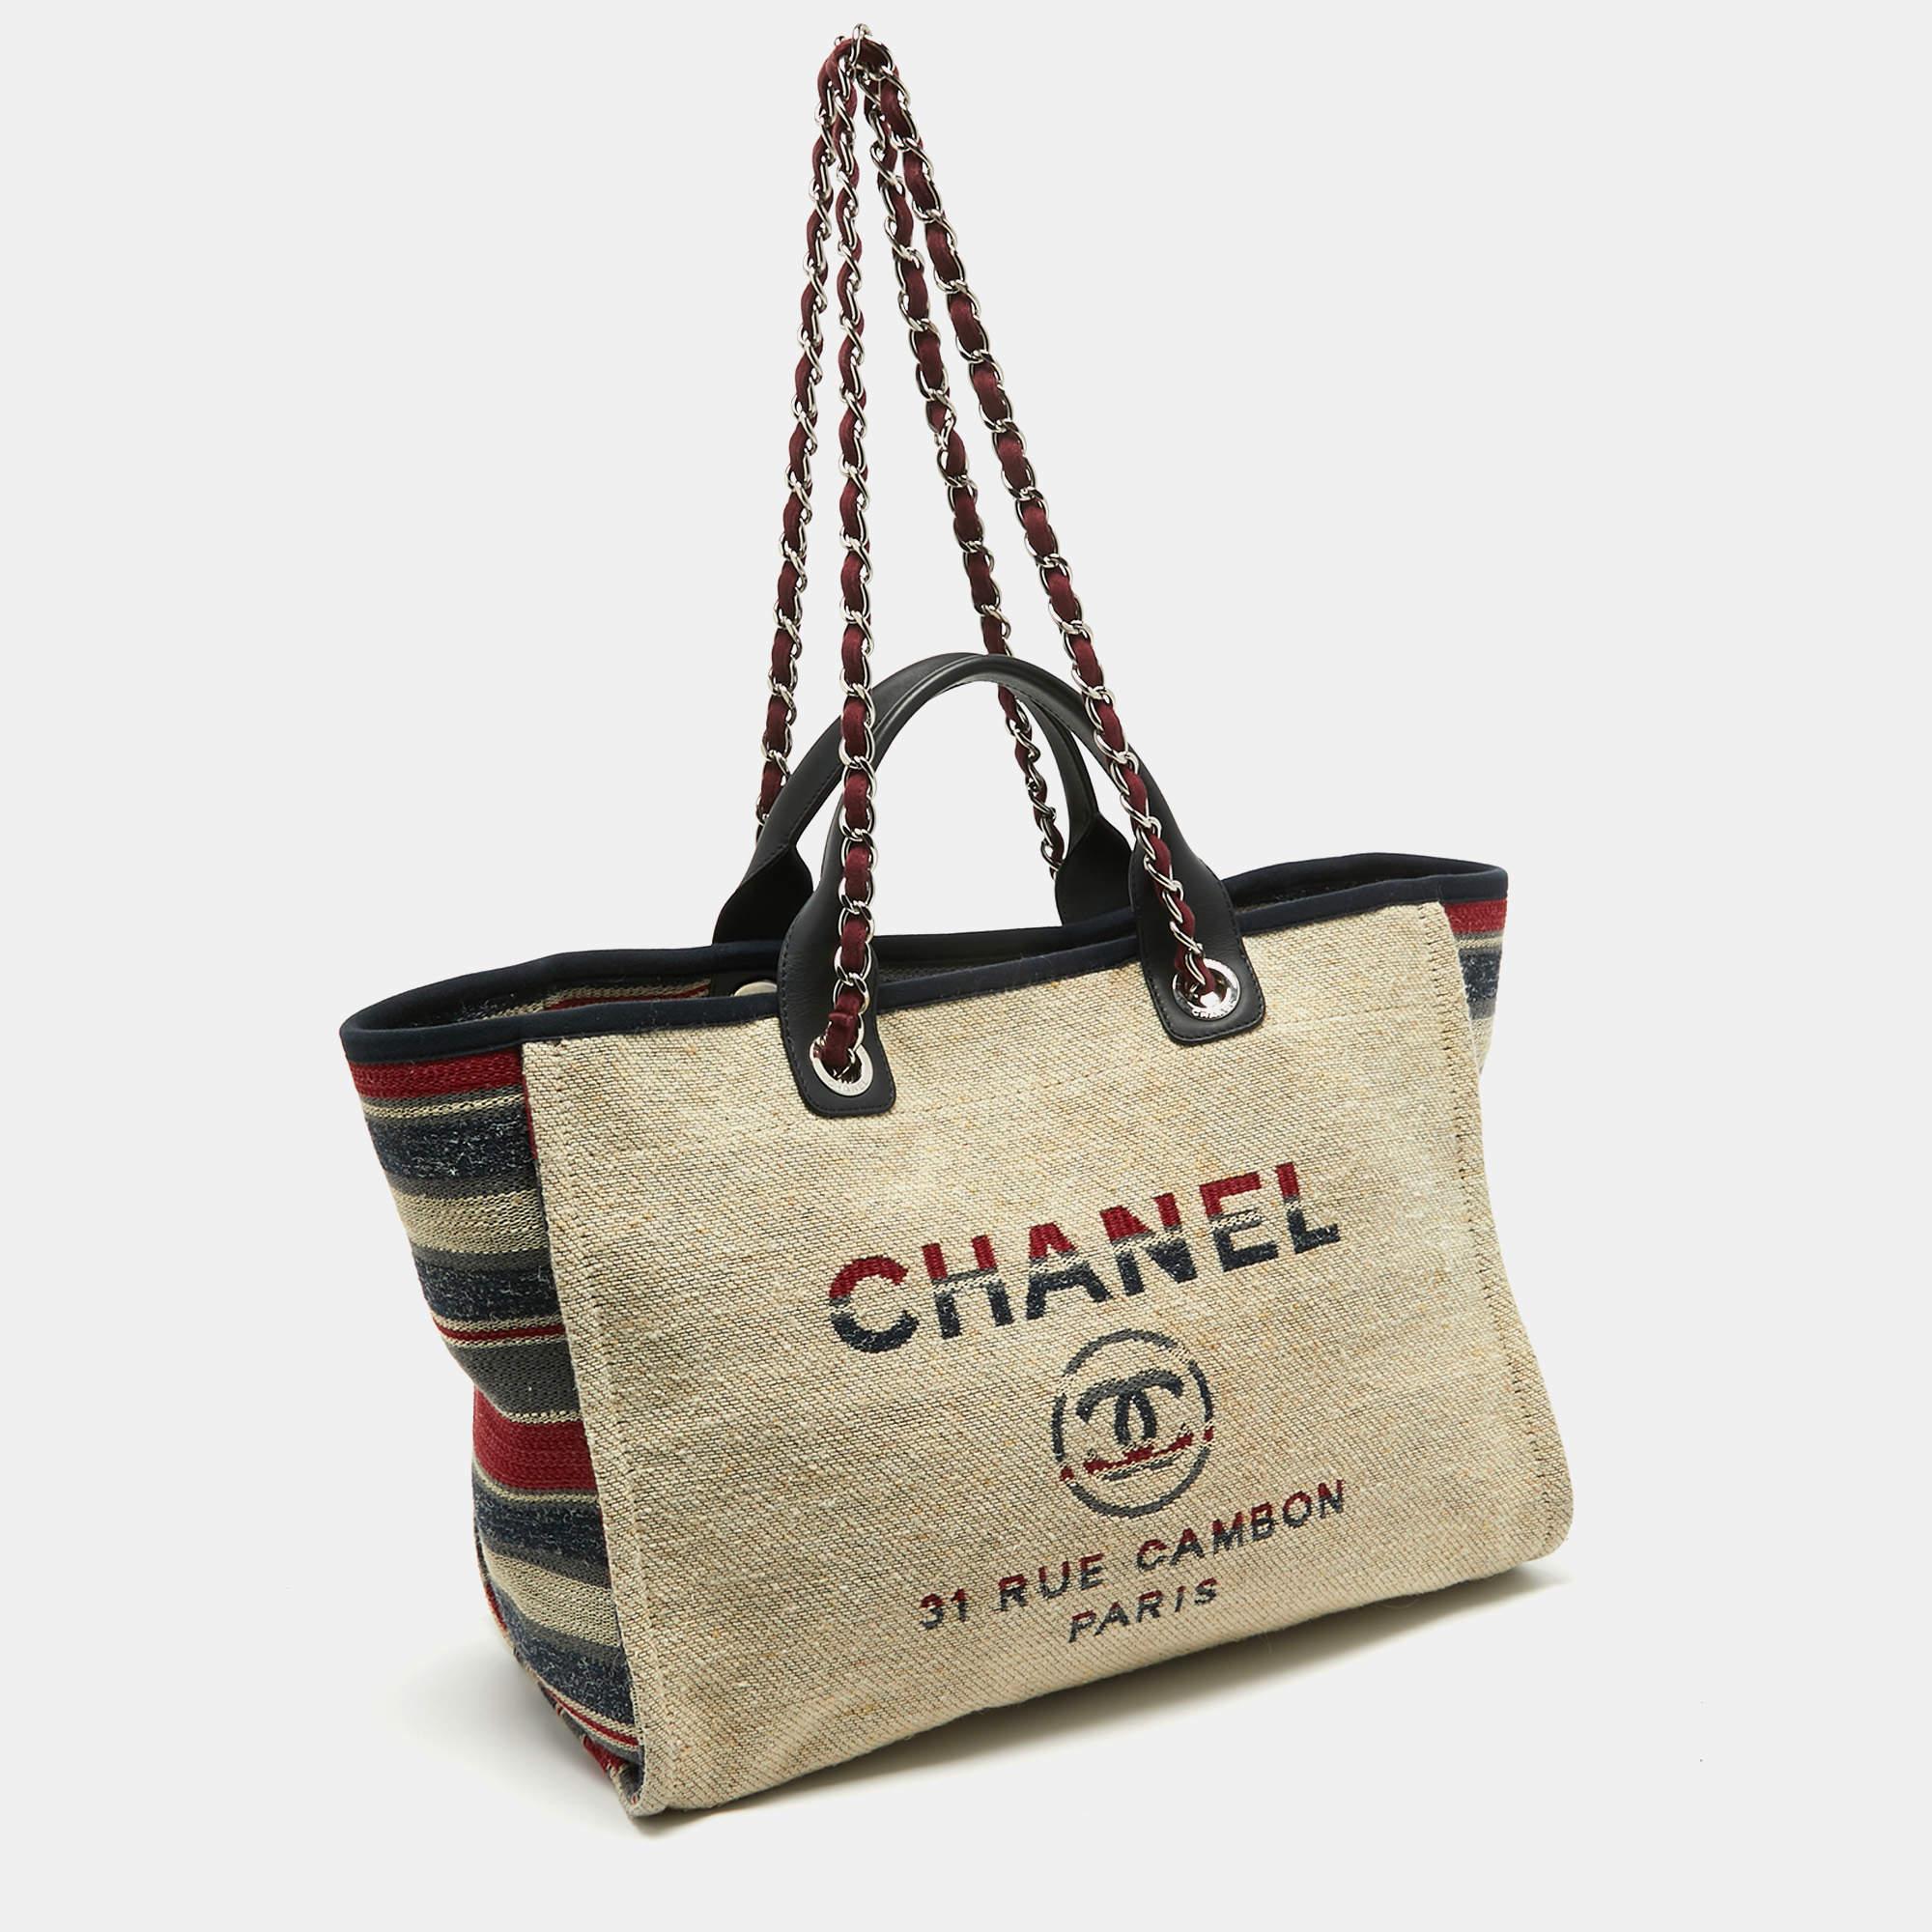 Chanel Multicolor Stripe Canvas and Leather Large Deauville Shopper Tote In Good Condition For Sale In Dubai, Al Qouz 2